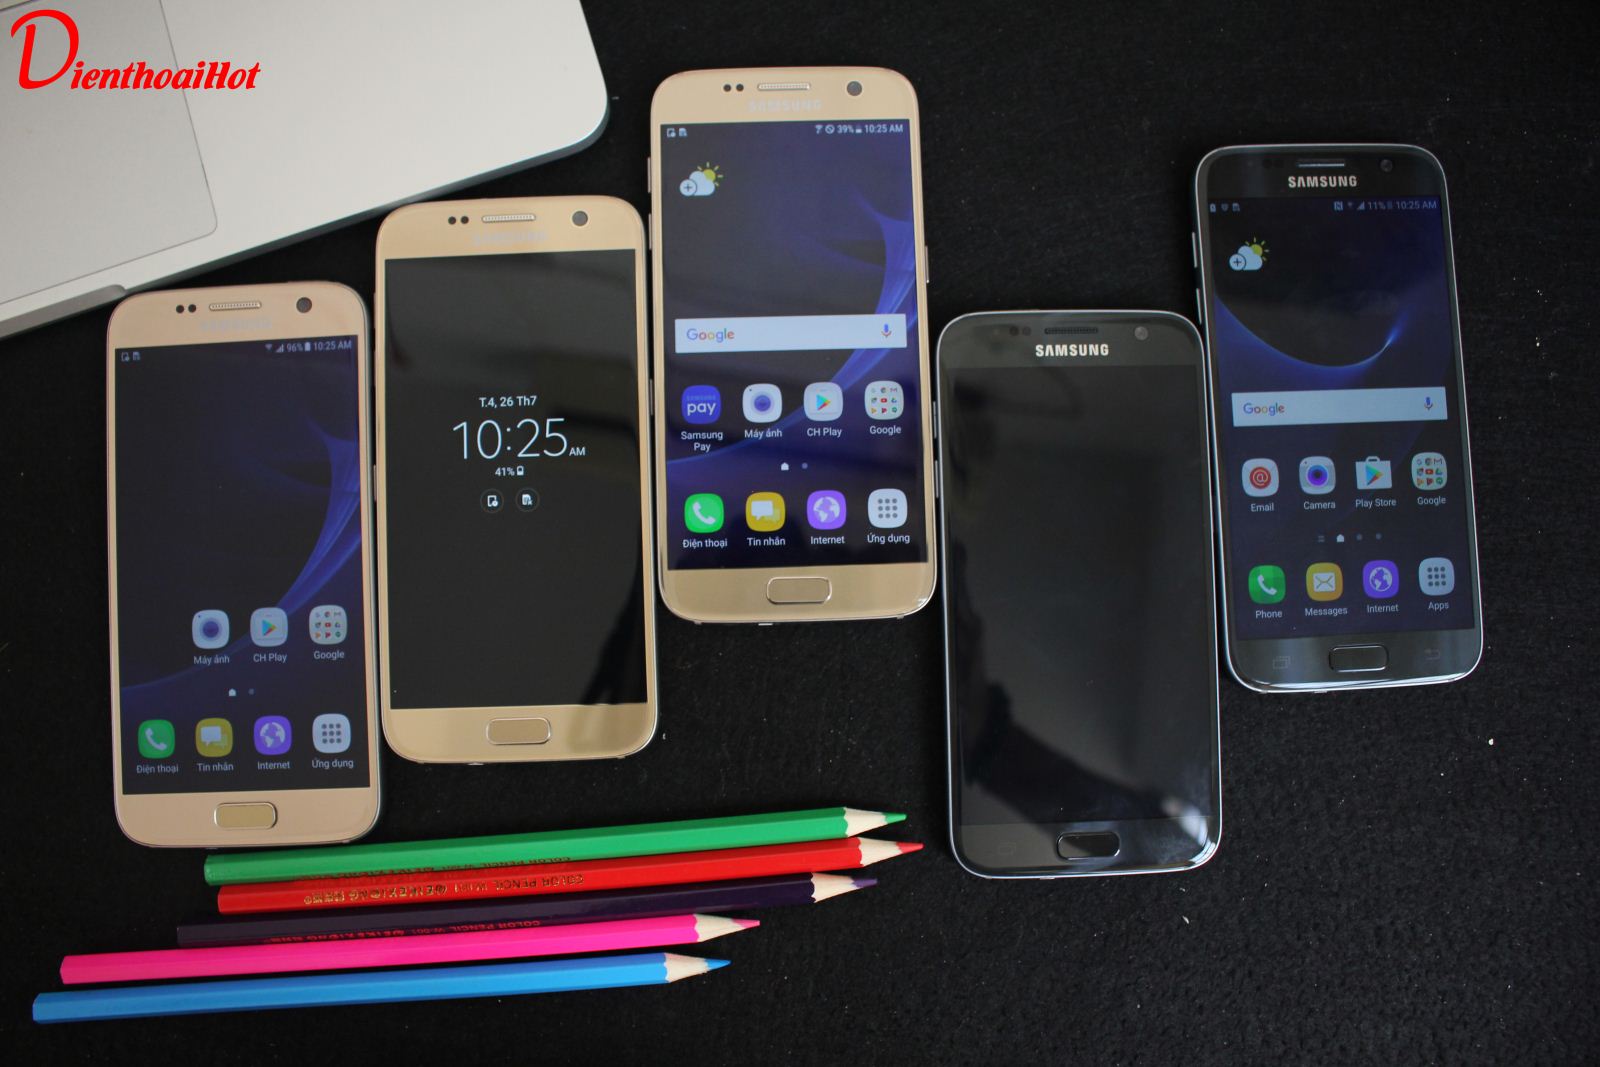 Samsung Galaxy S7 Xách Tay Mỹ luôn được ưu chuộng tại Dienthoaihot